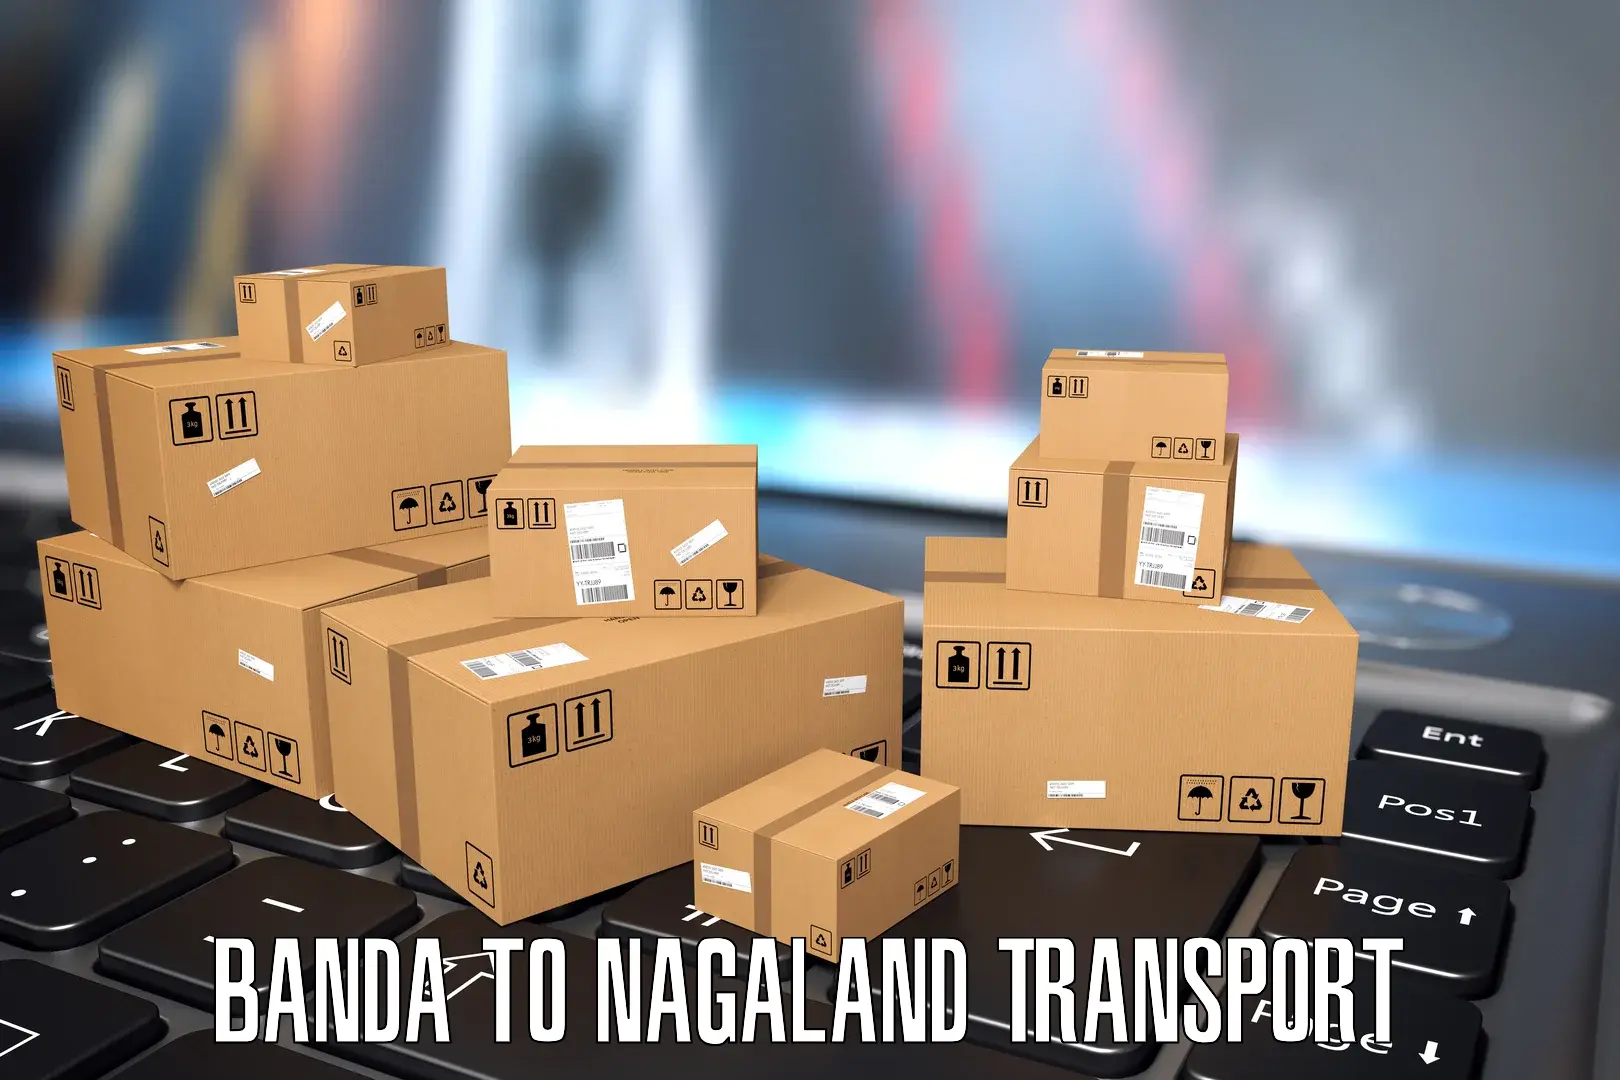 Daily transport service Banda to NIT Nagaland